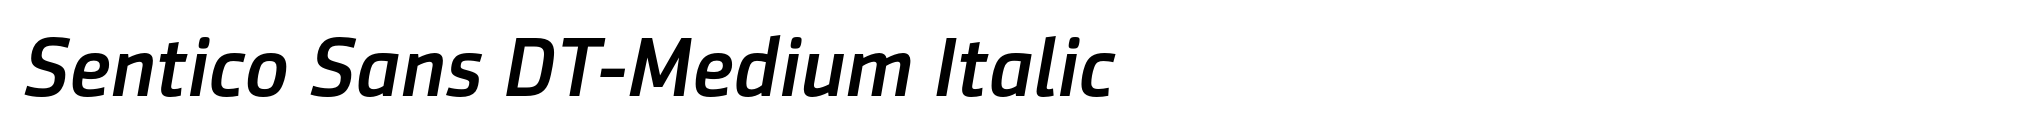 Sentico Sans DT-Medium Italic image